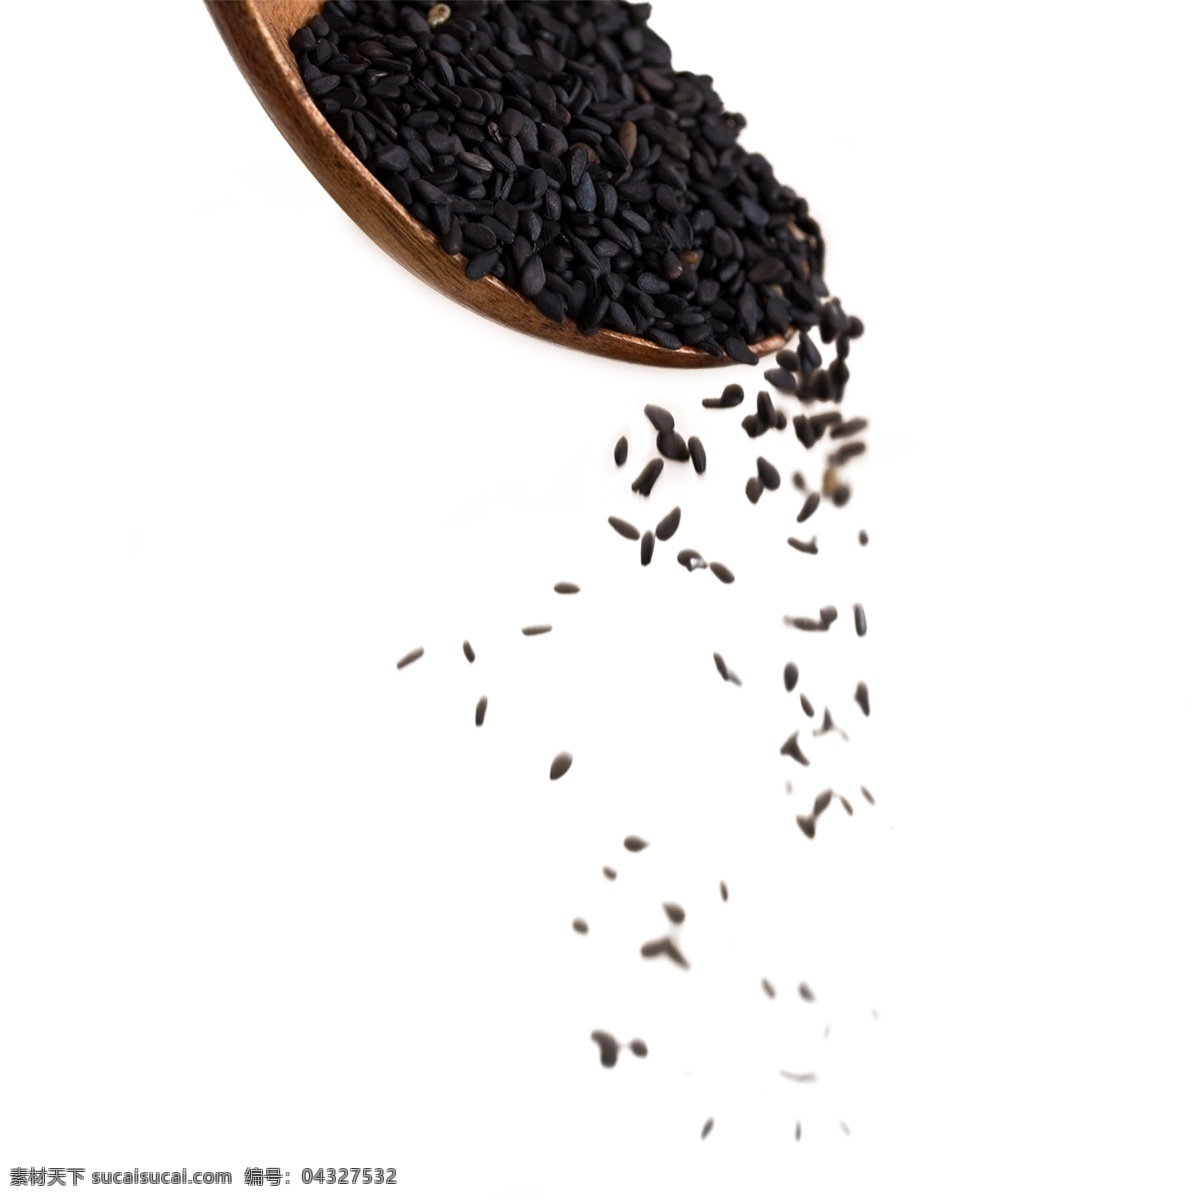 黑米 食物 食品 粮食 颗粒 好吃的食物 温饱的粮食 黑色的谷物 谷物 吃的 黑色 有益 身体